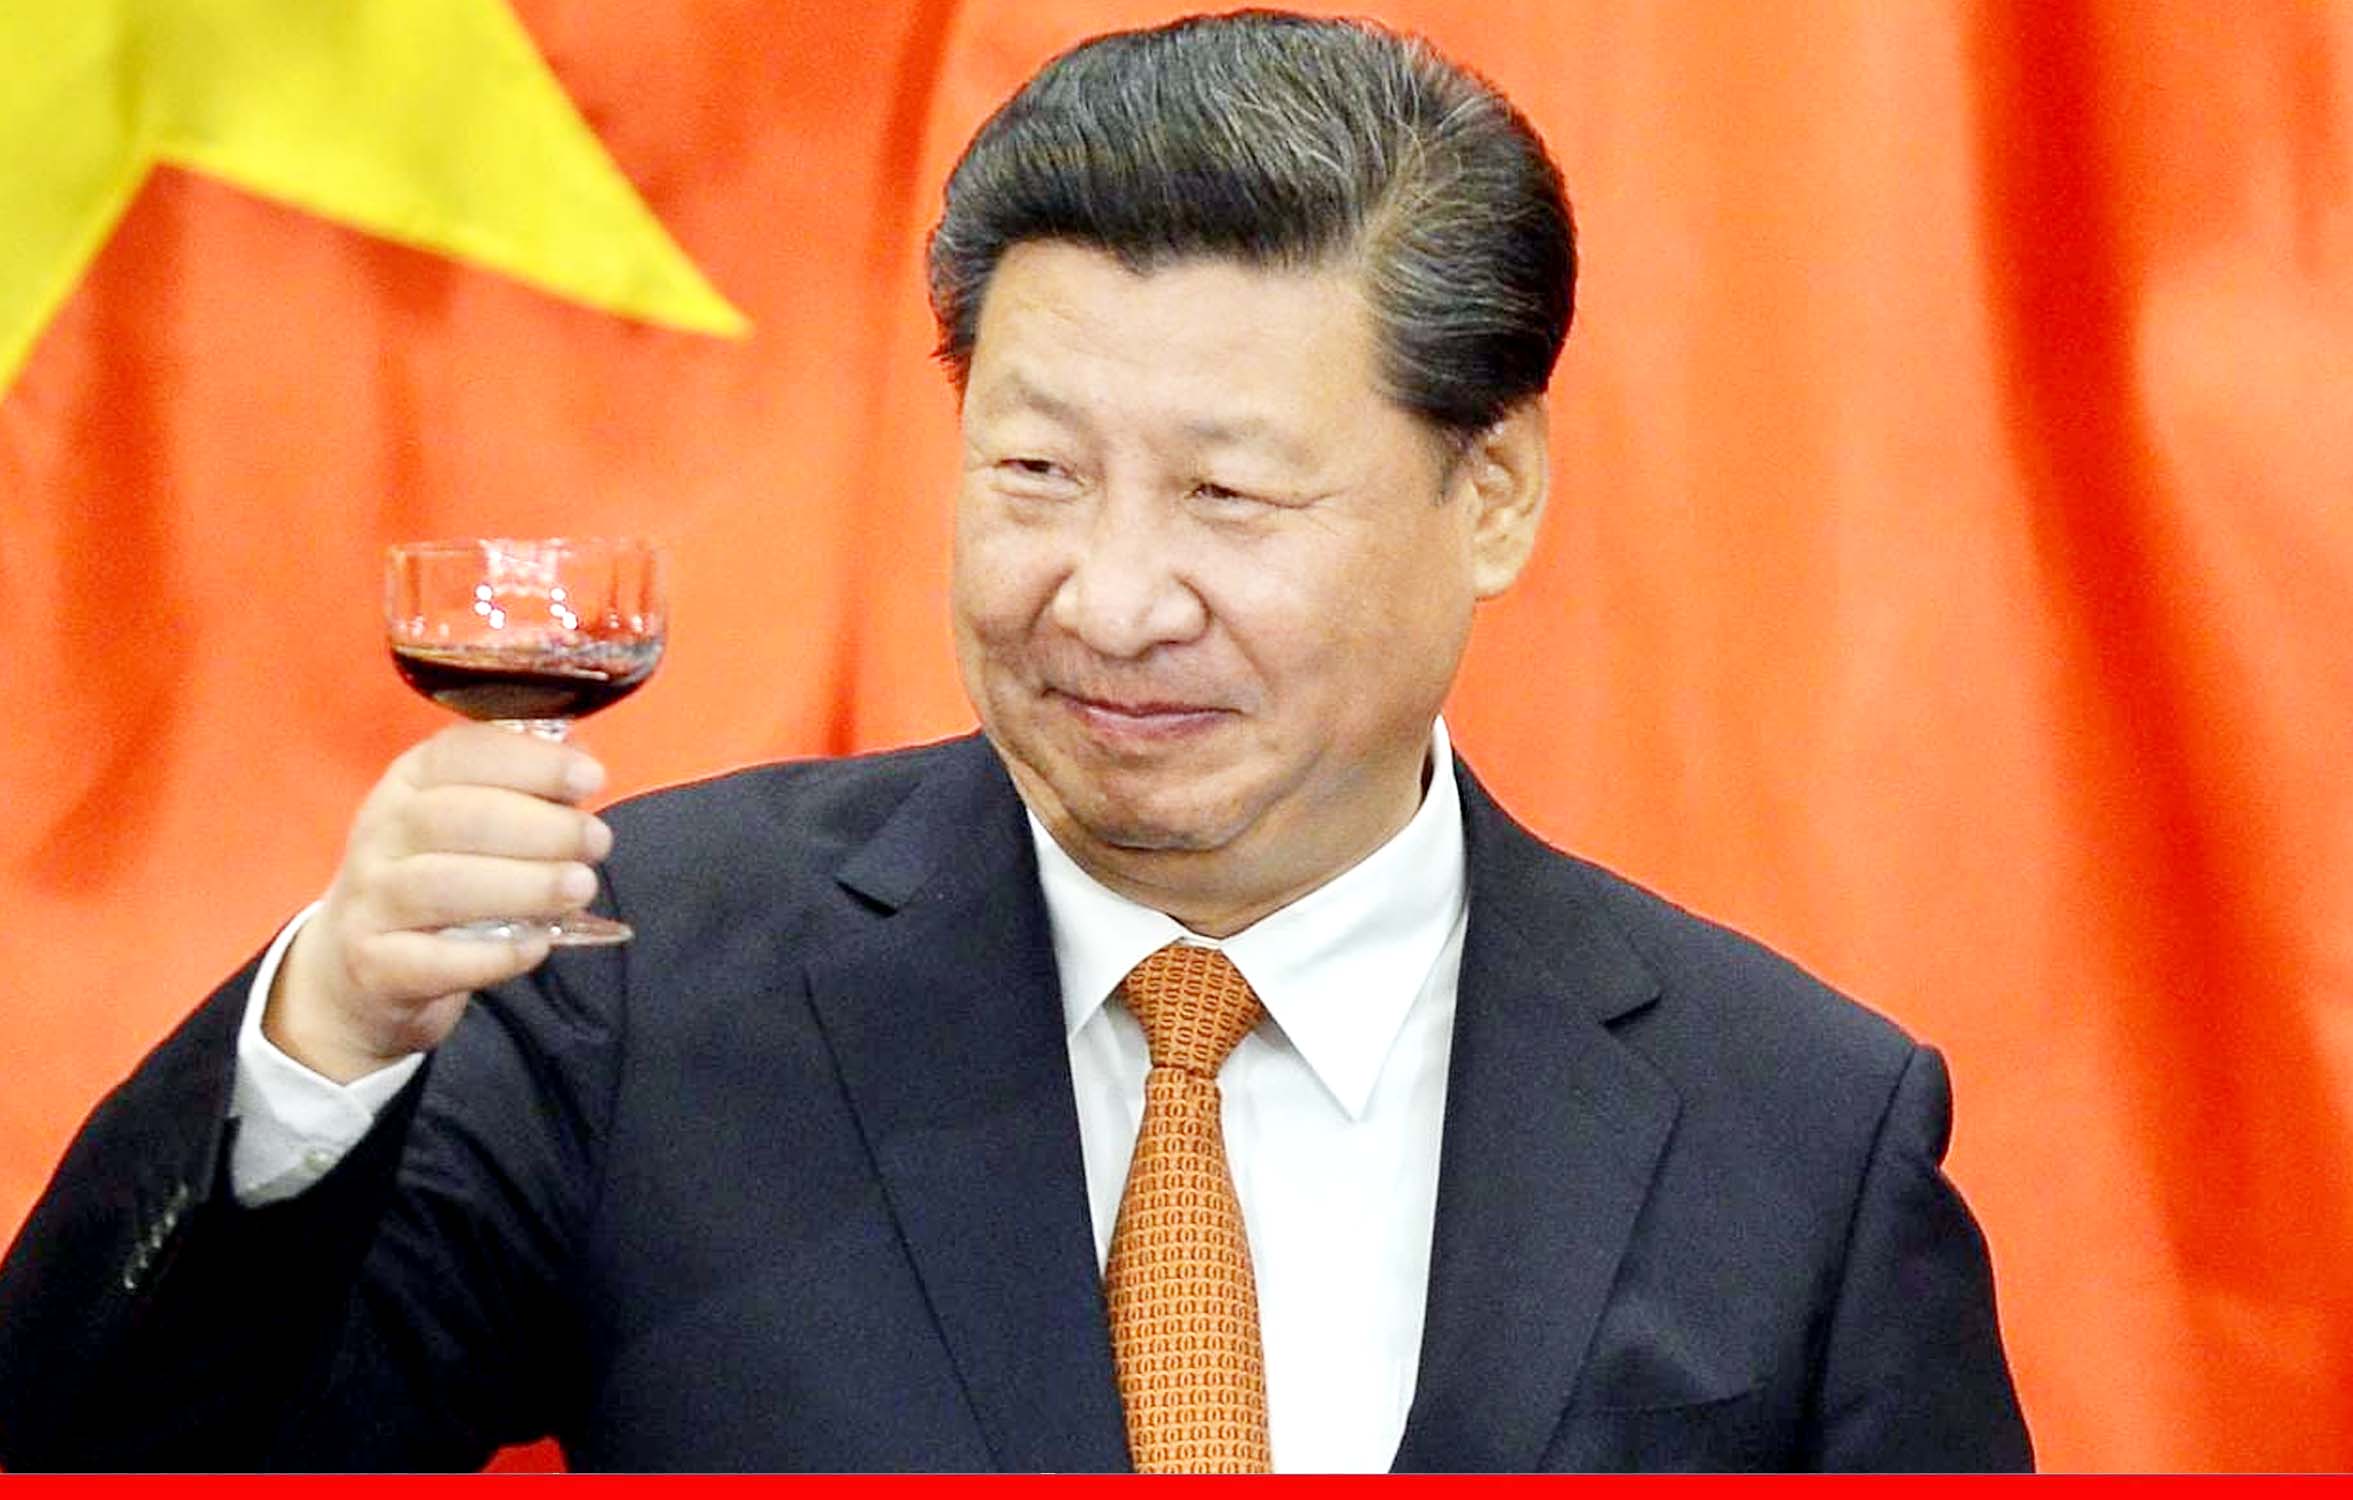 600 दिन में एक भी विदेश दौरा नहीं, क्या बीमार हैं चीनी राष्ट्रपति शी जिनपिंग?